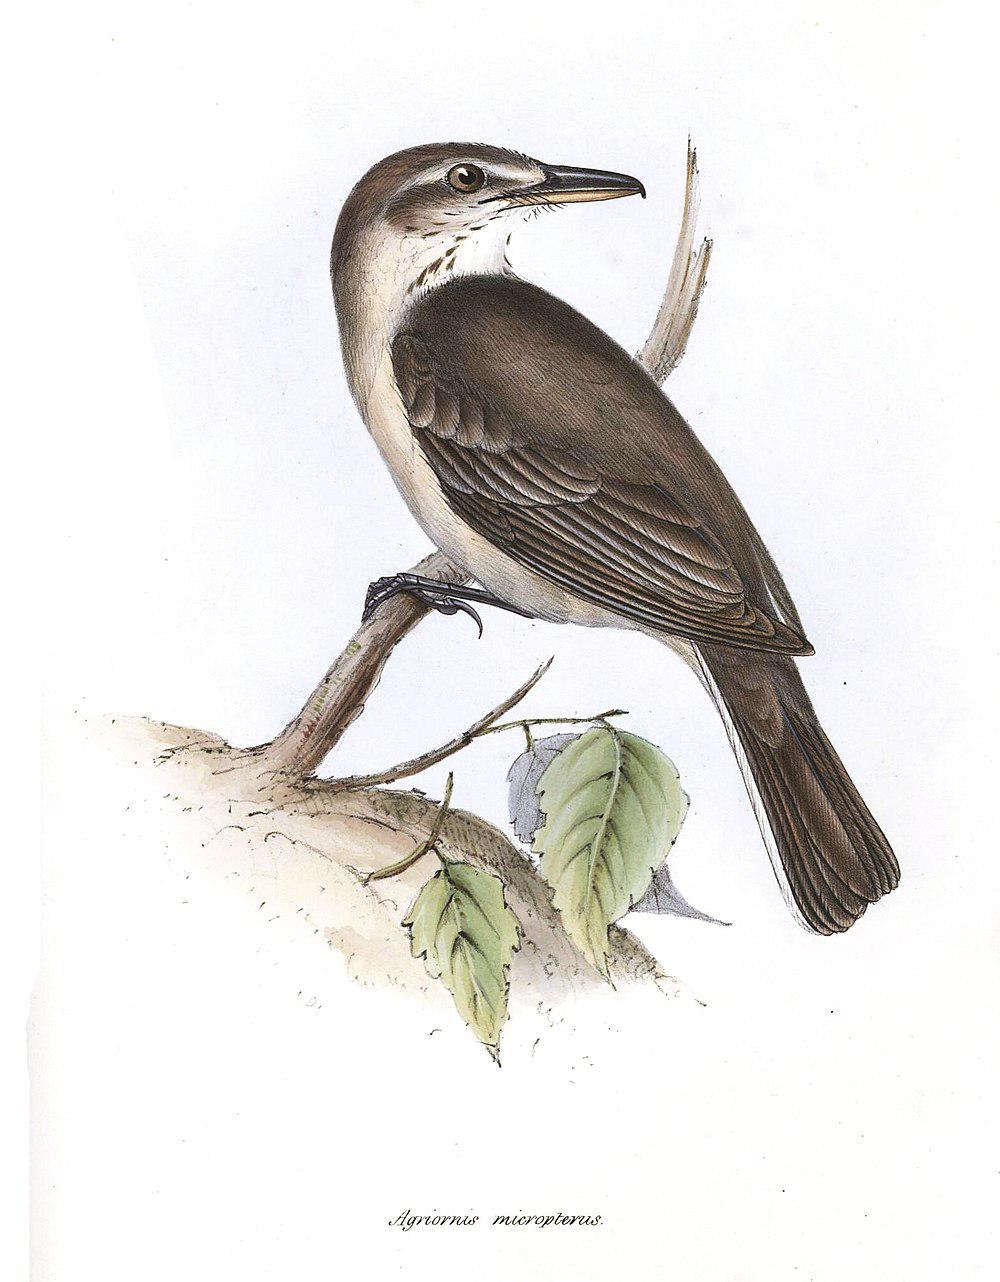 灰腹鵙霸鹟 / Grey-bellied Shrike-Tyrant / Agriornis micropterus